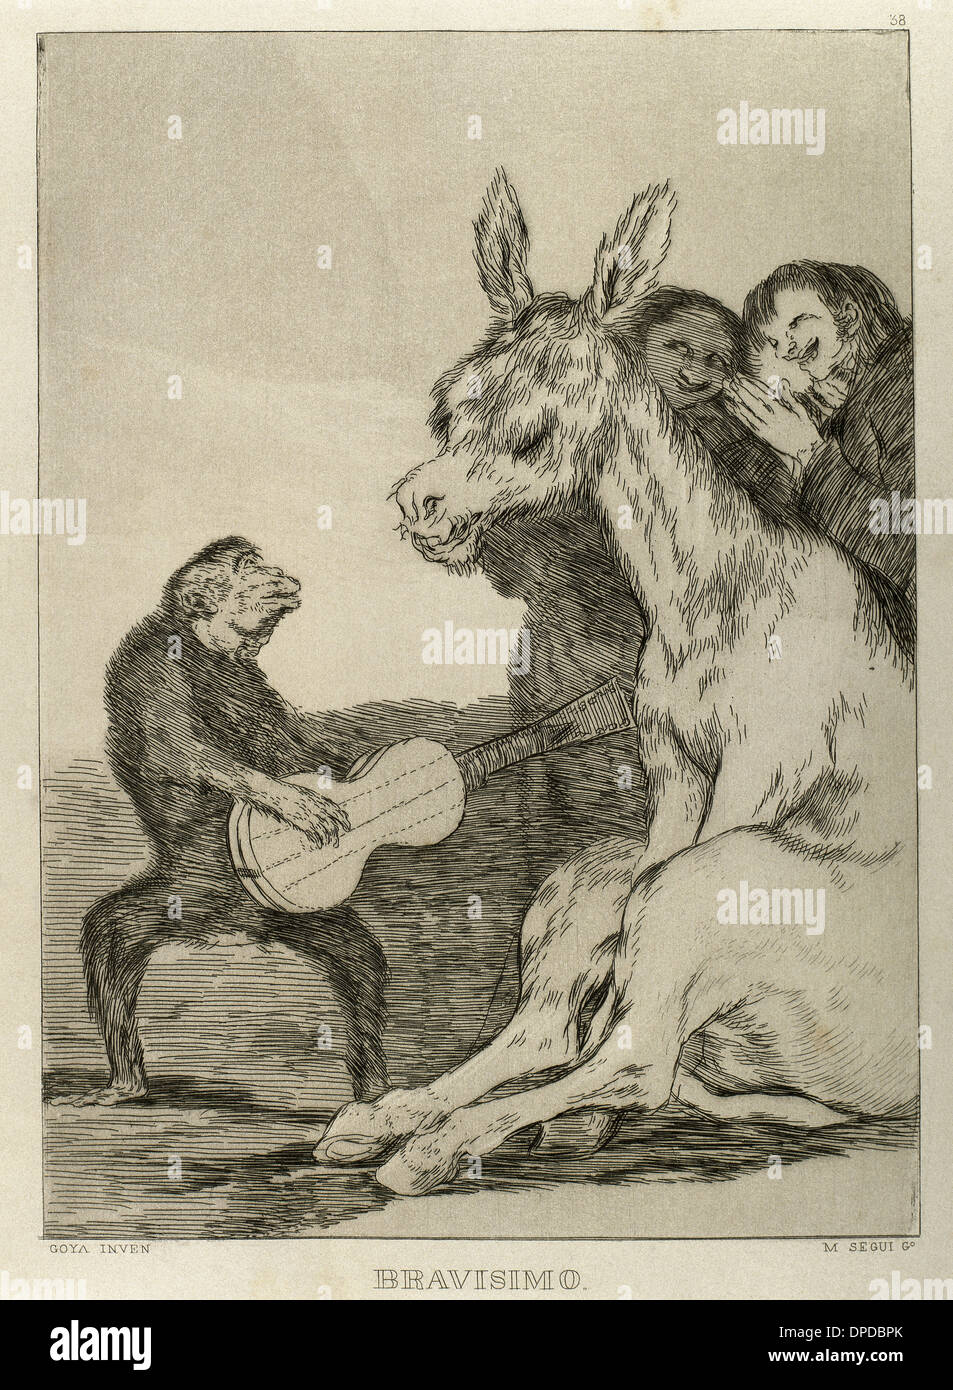 Goya (1746-1828). Peintre et graveur espagnol. Los Caprichos. ¡Bravisimo ! Numéro 38. L'aquatinte. Banque D'Images